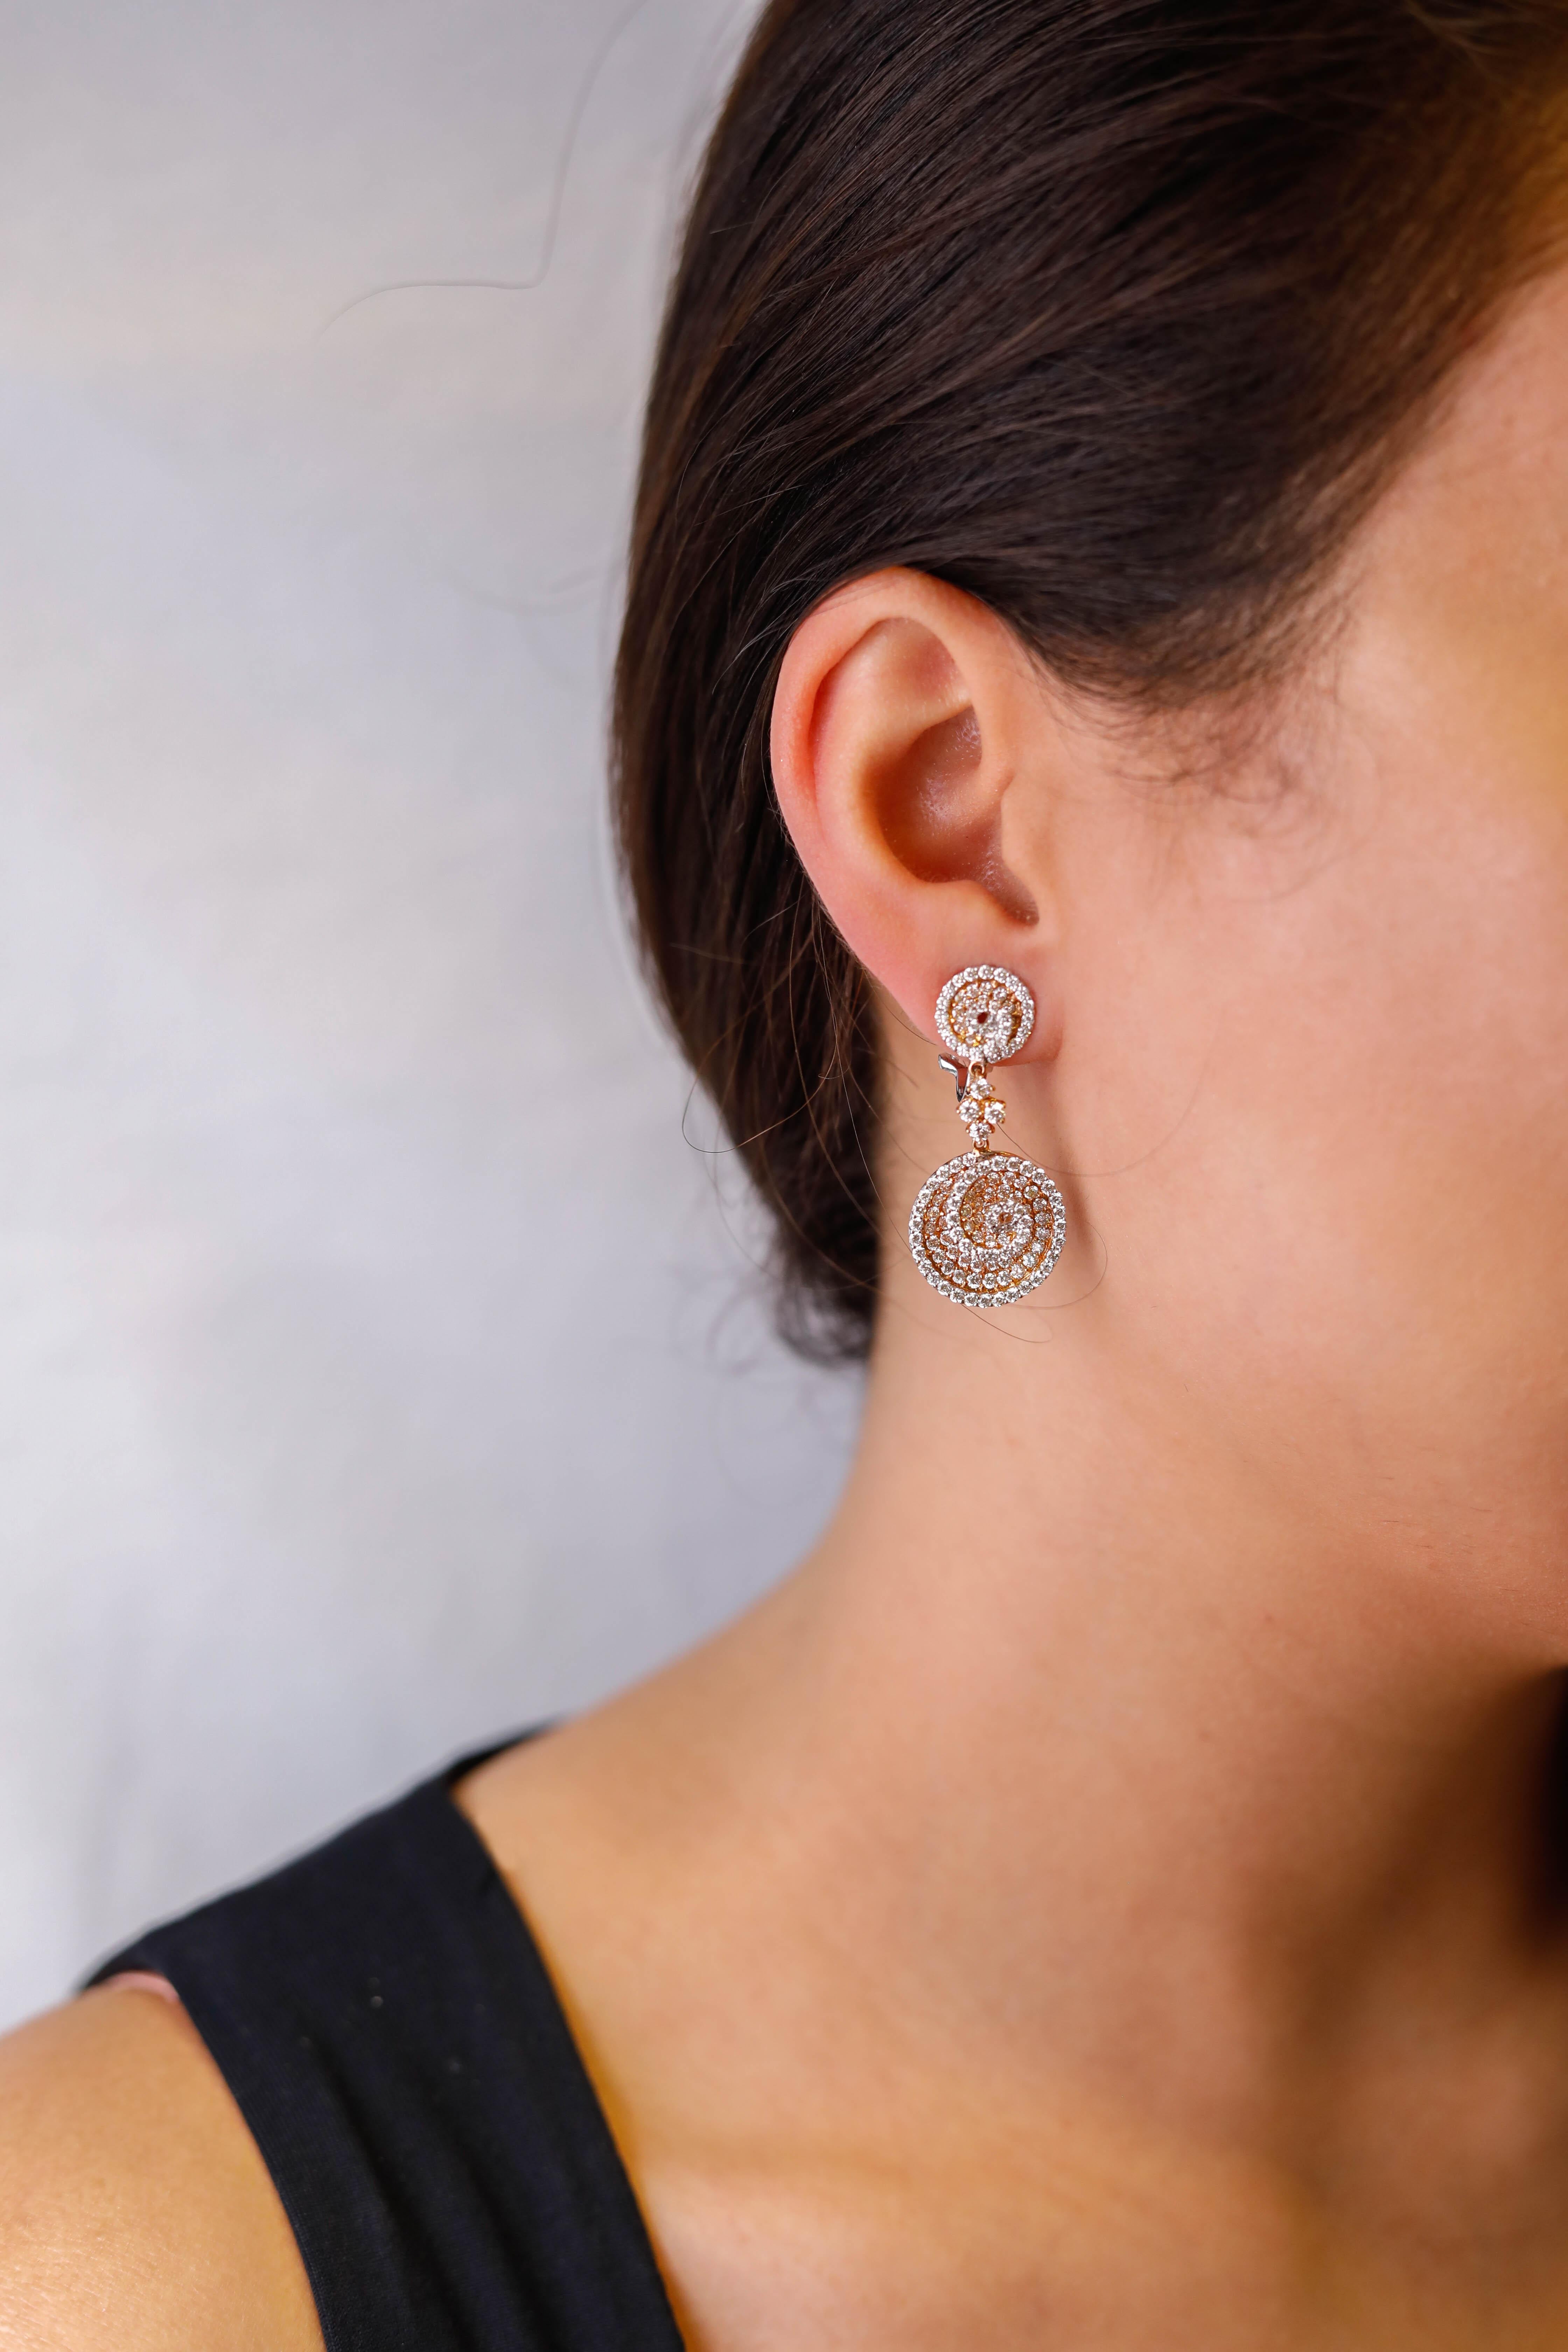 Infinity Kreis Design 5,0 ctw Pave Diamant Tropfen Ohrringe in 18k Rose Gold

Verziert mit Reihen von runden Diamanten funkeln sie mit Stil. Die insgesamt 5,33 ctw. großen Diamanten aus zweifarbigem 18-karätigem Gold sind zart in die Ohrringe